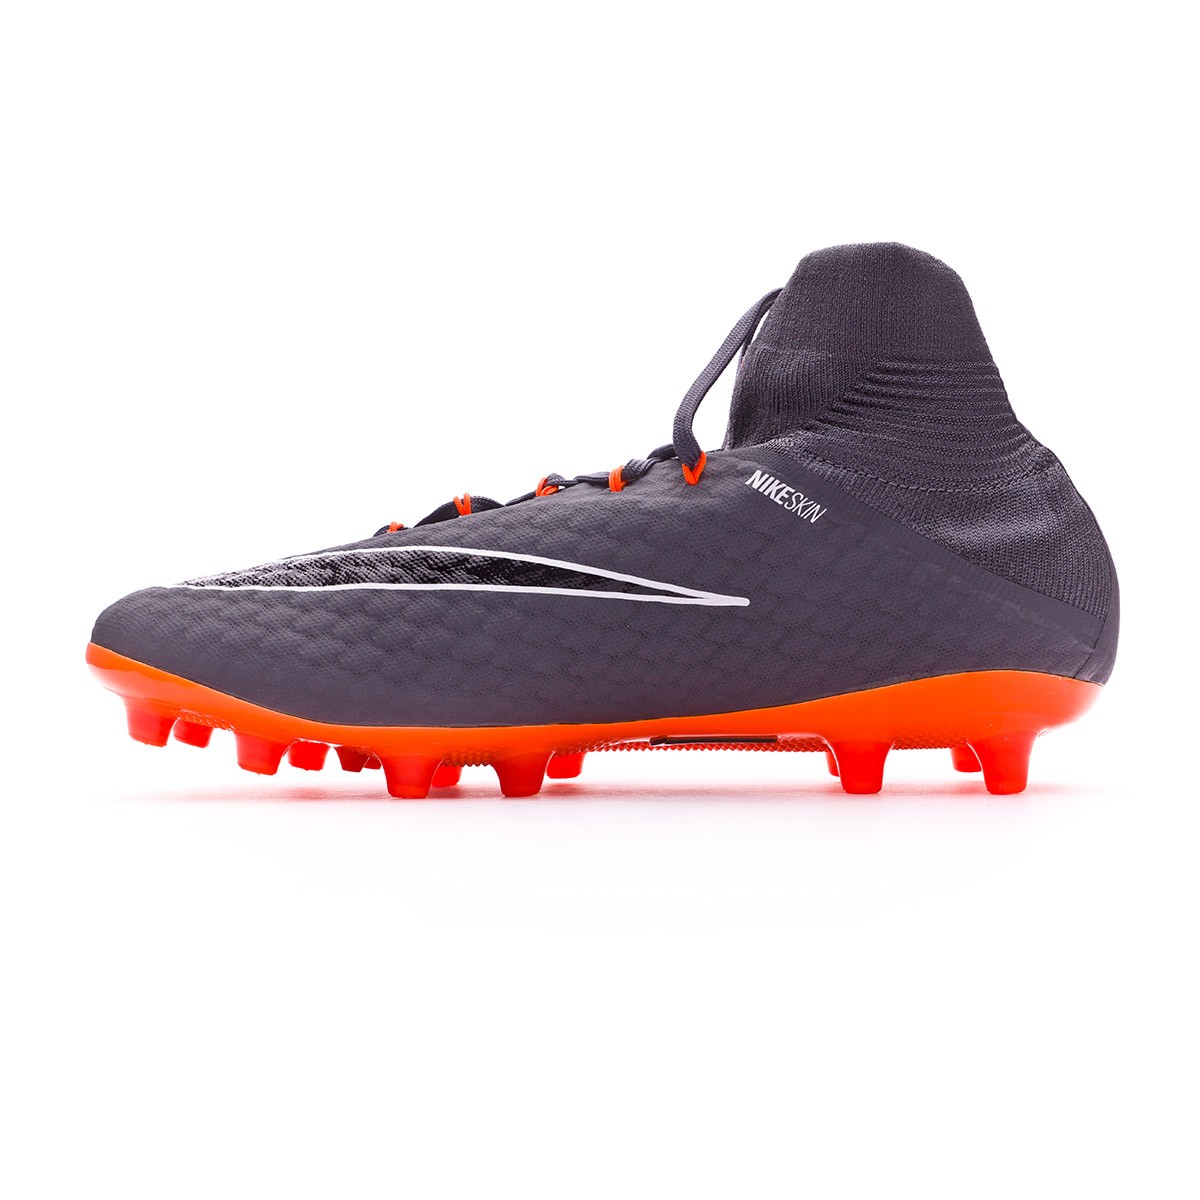 Bota de fútbol Nike Hypervenom Phantom III Pro DF AG-Pro Dark grey-Total  orange-White - Tienda de fútbol Fútbol Emotion